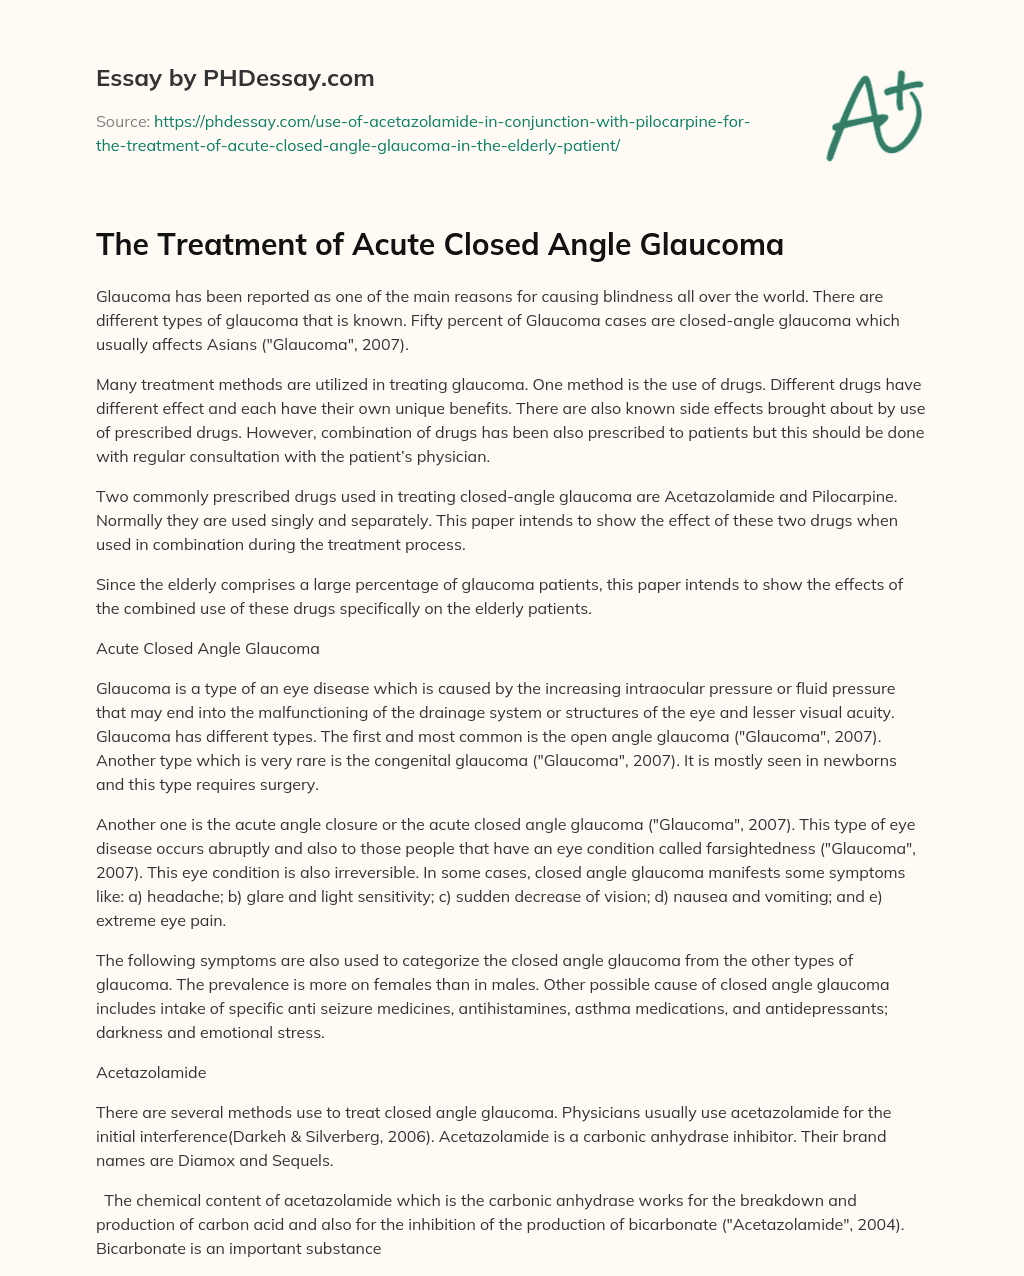 The Treatment of Acute Closed Angle Glaucoma essay